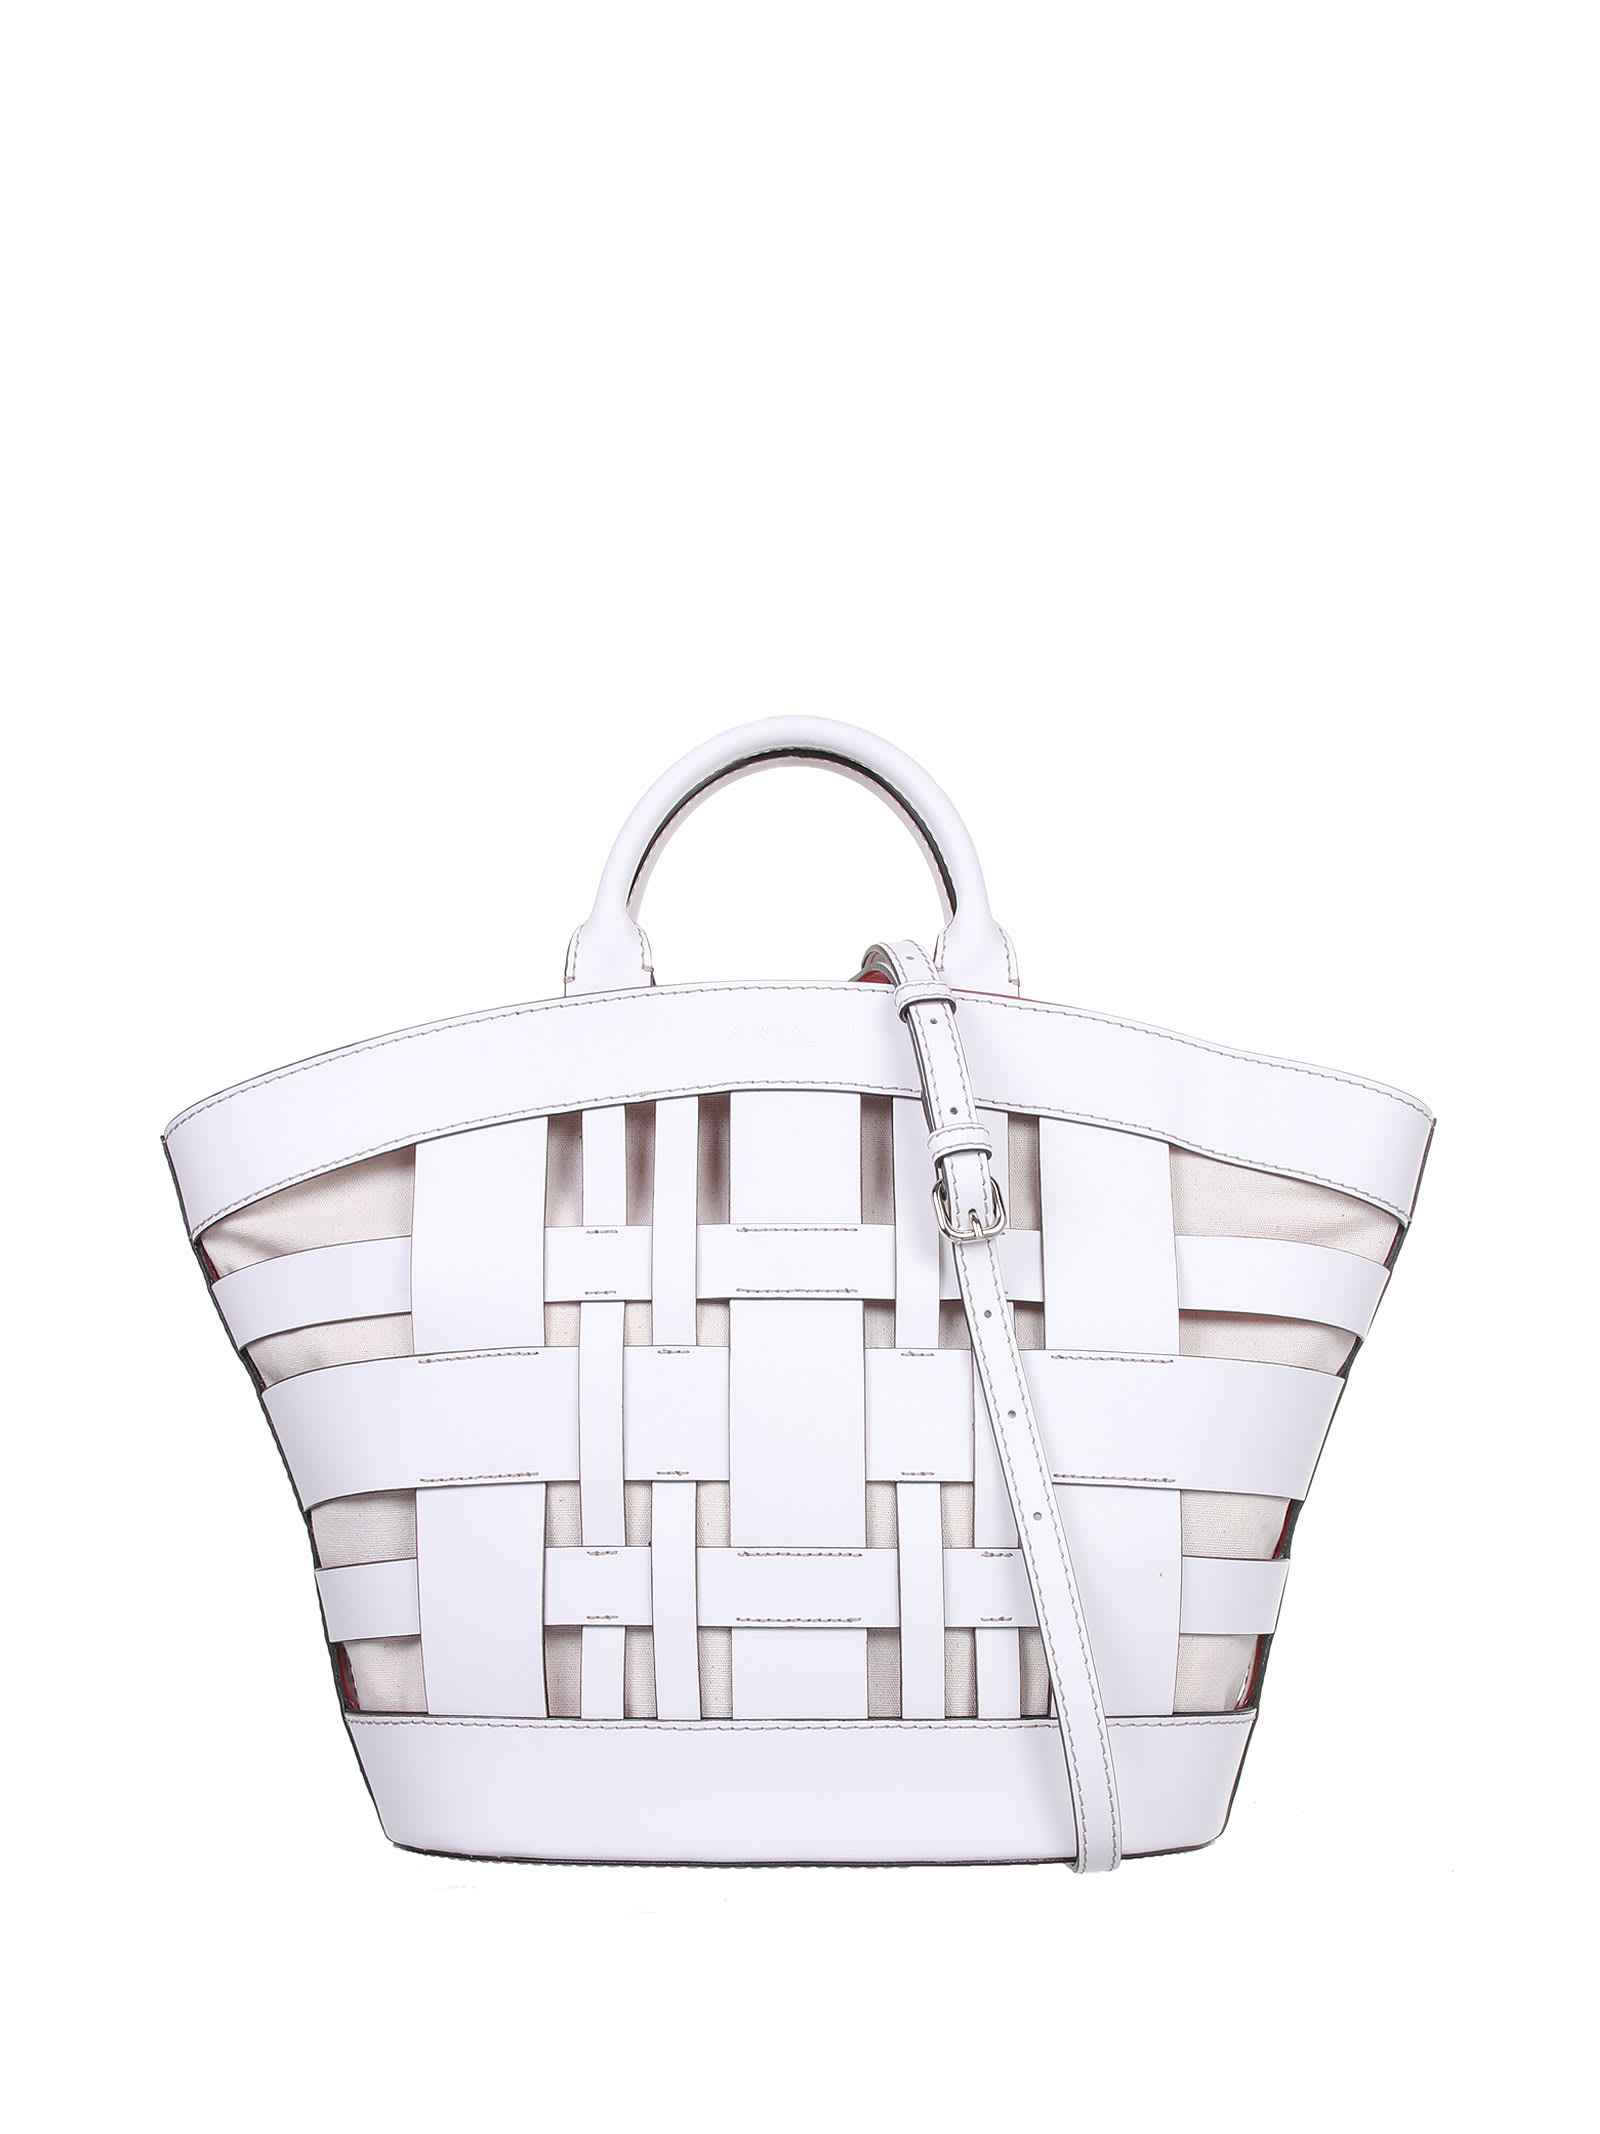 Gianni Chiarini Gea White Shopping Bag